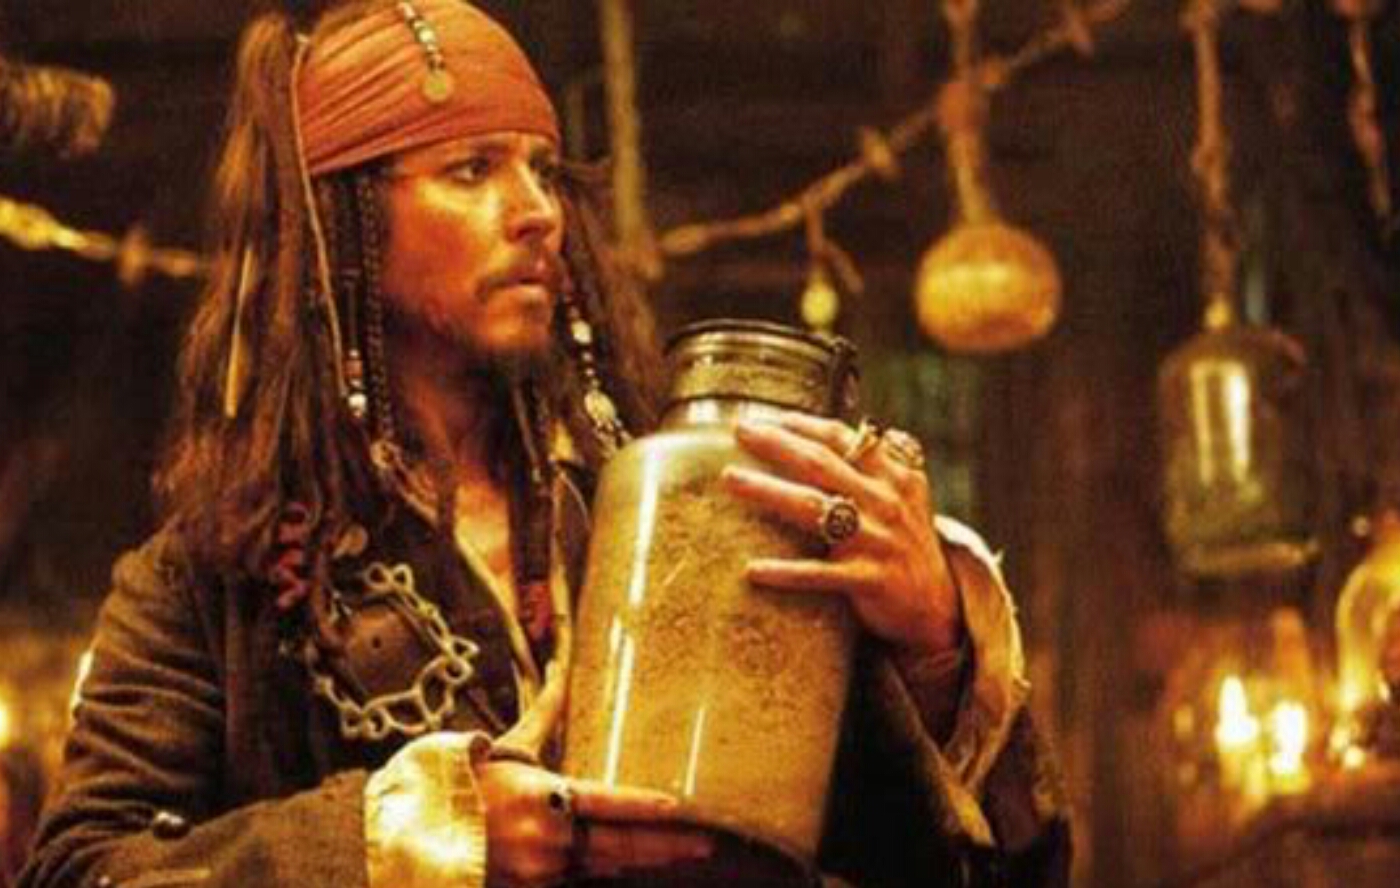 Jack Sparrow Jar of Dirt  Blank Meme Template